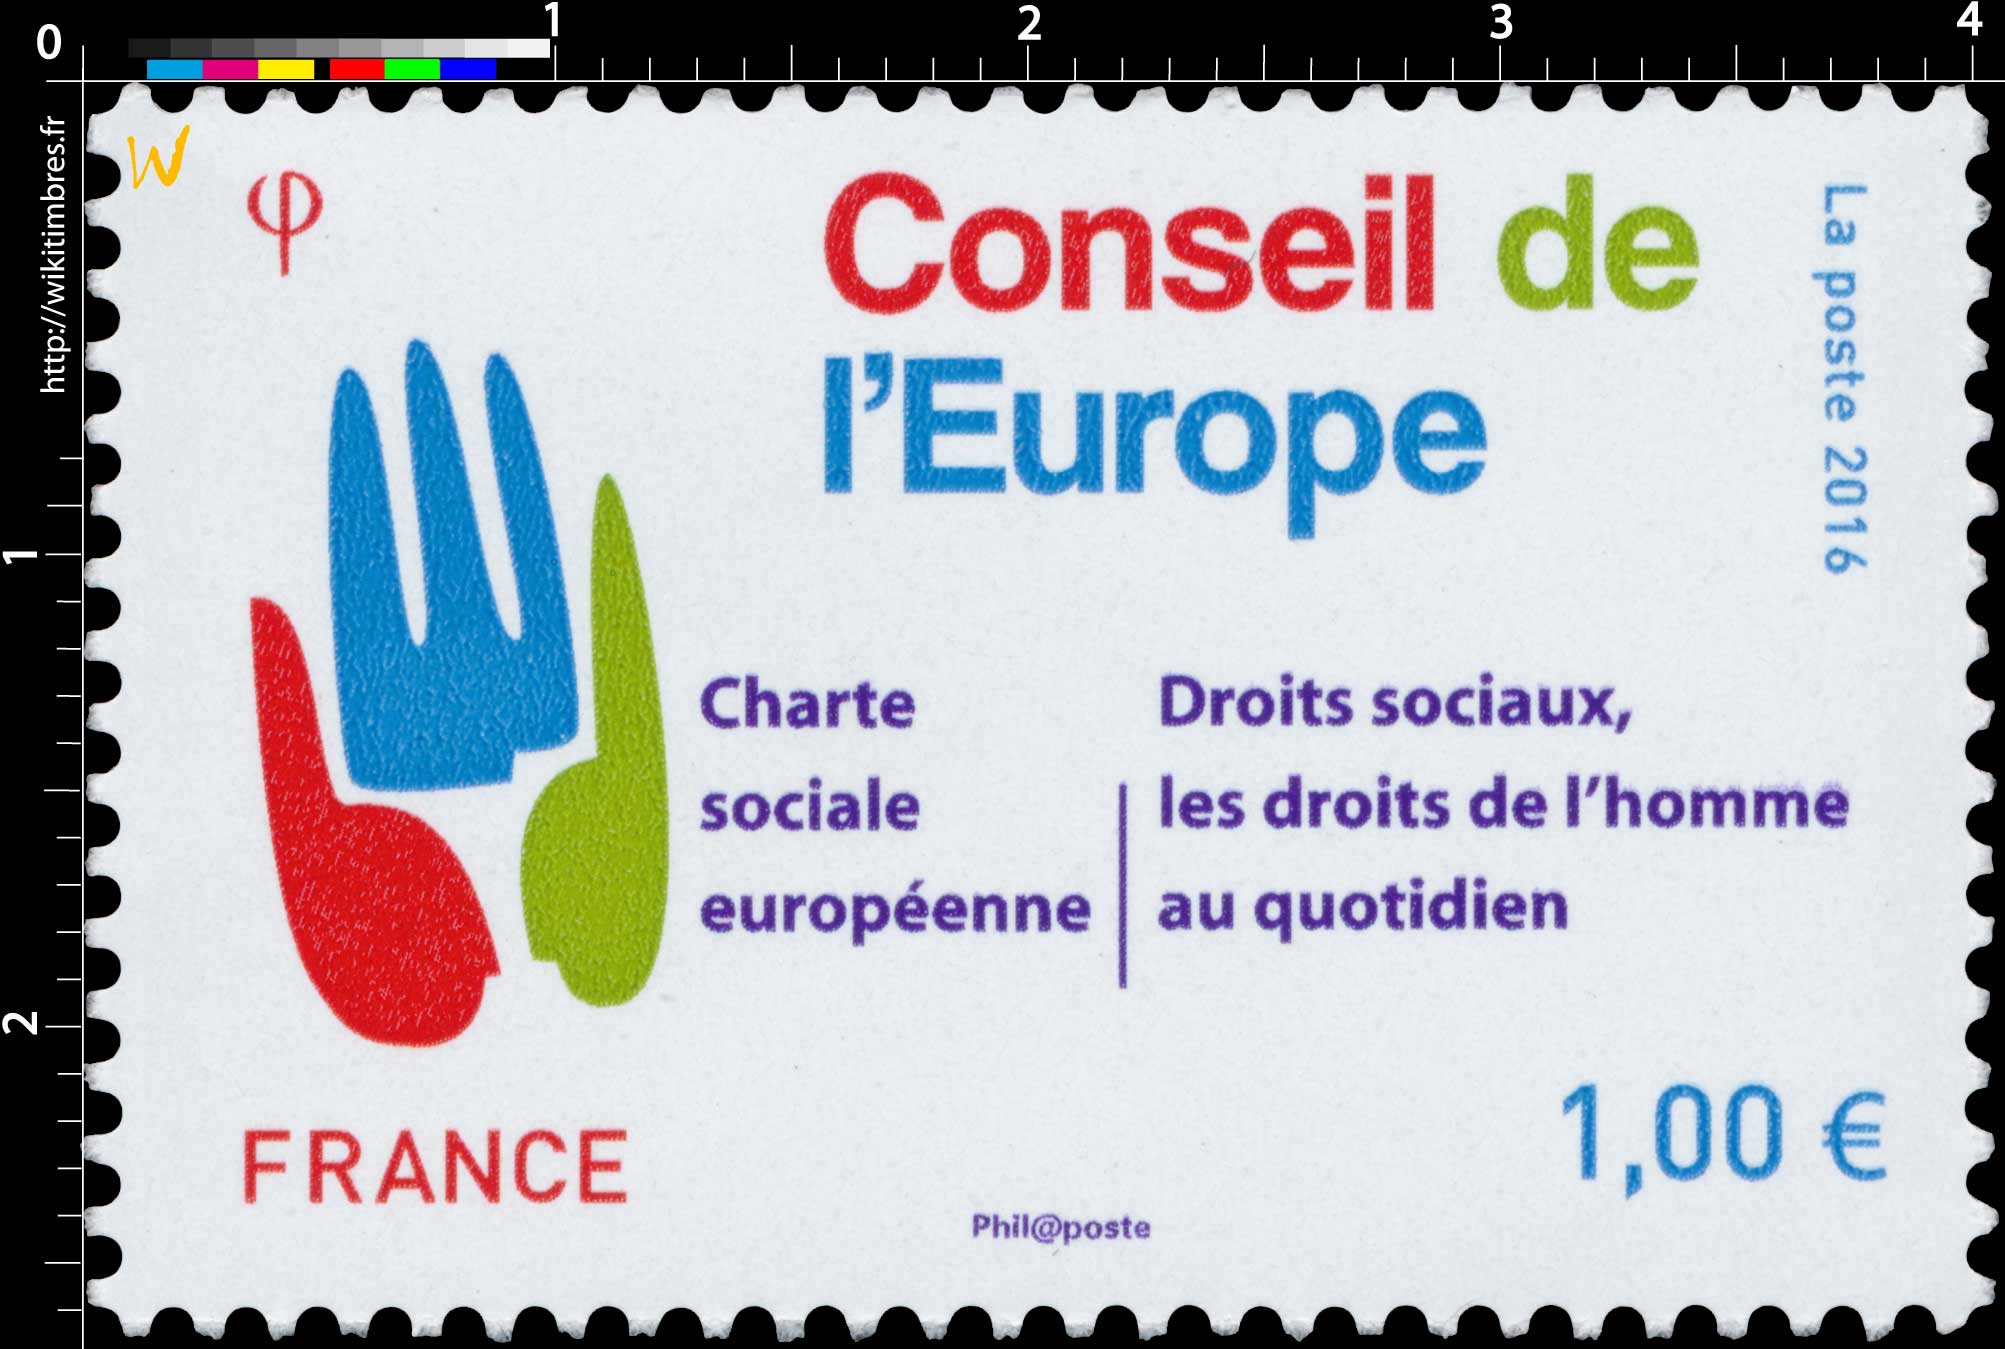 2016 Conseil de l’Europe - Charte sociale européenne - Droits sociaux, les droits de l'homme au quotidien